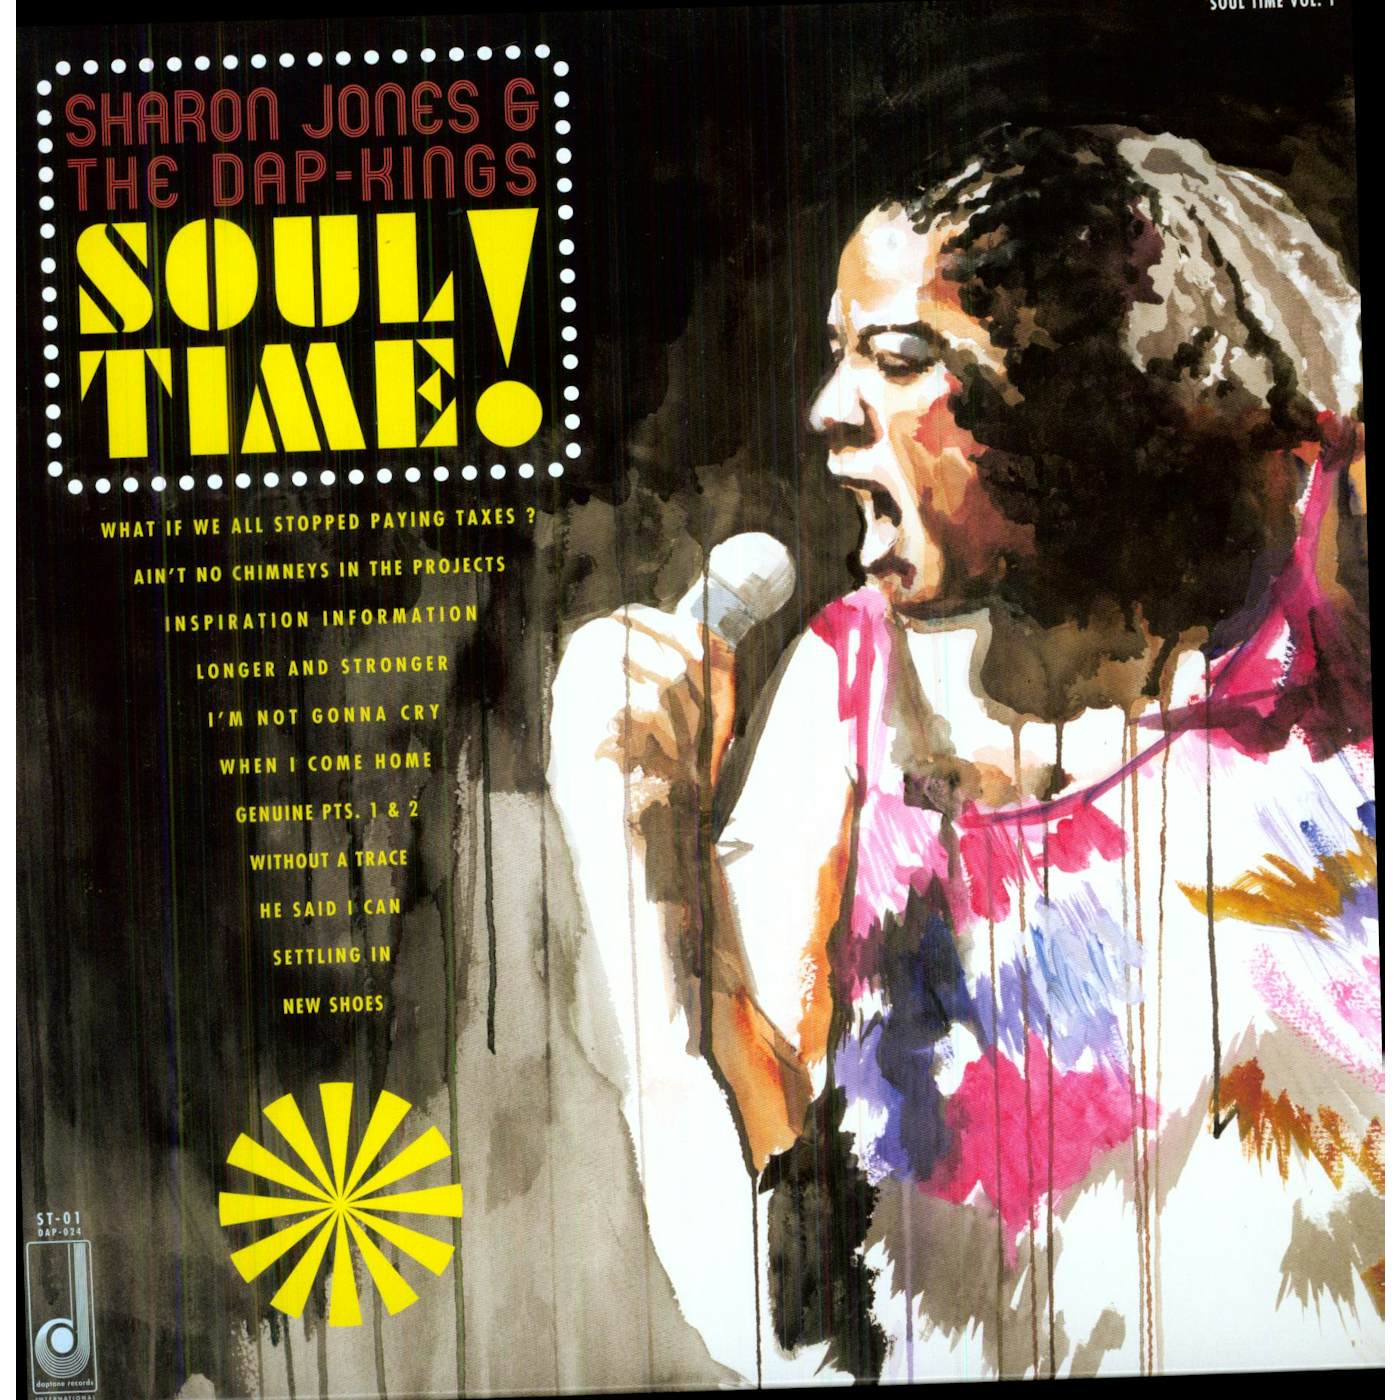 Sharon Jones & The Dap-Kings SOUL TIME Vinyl Record